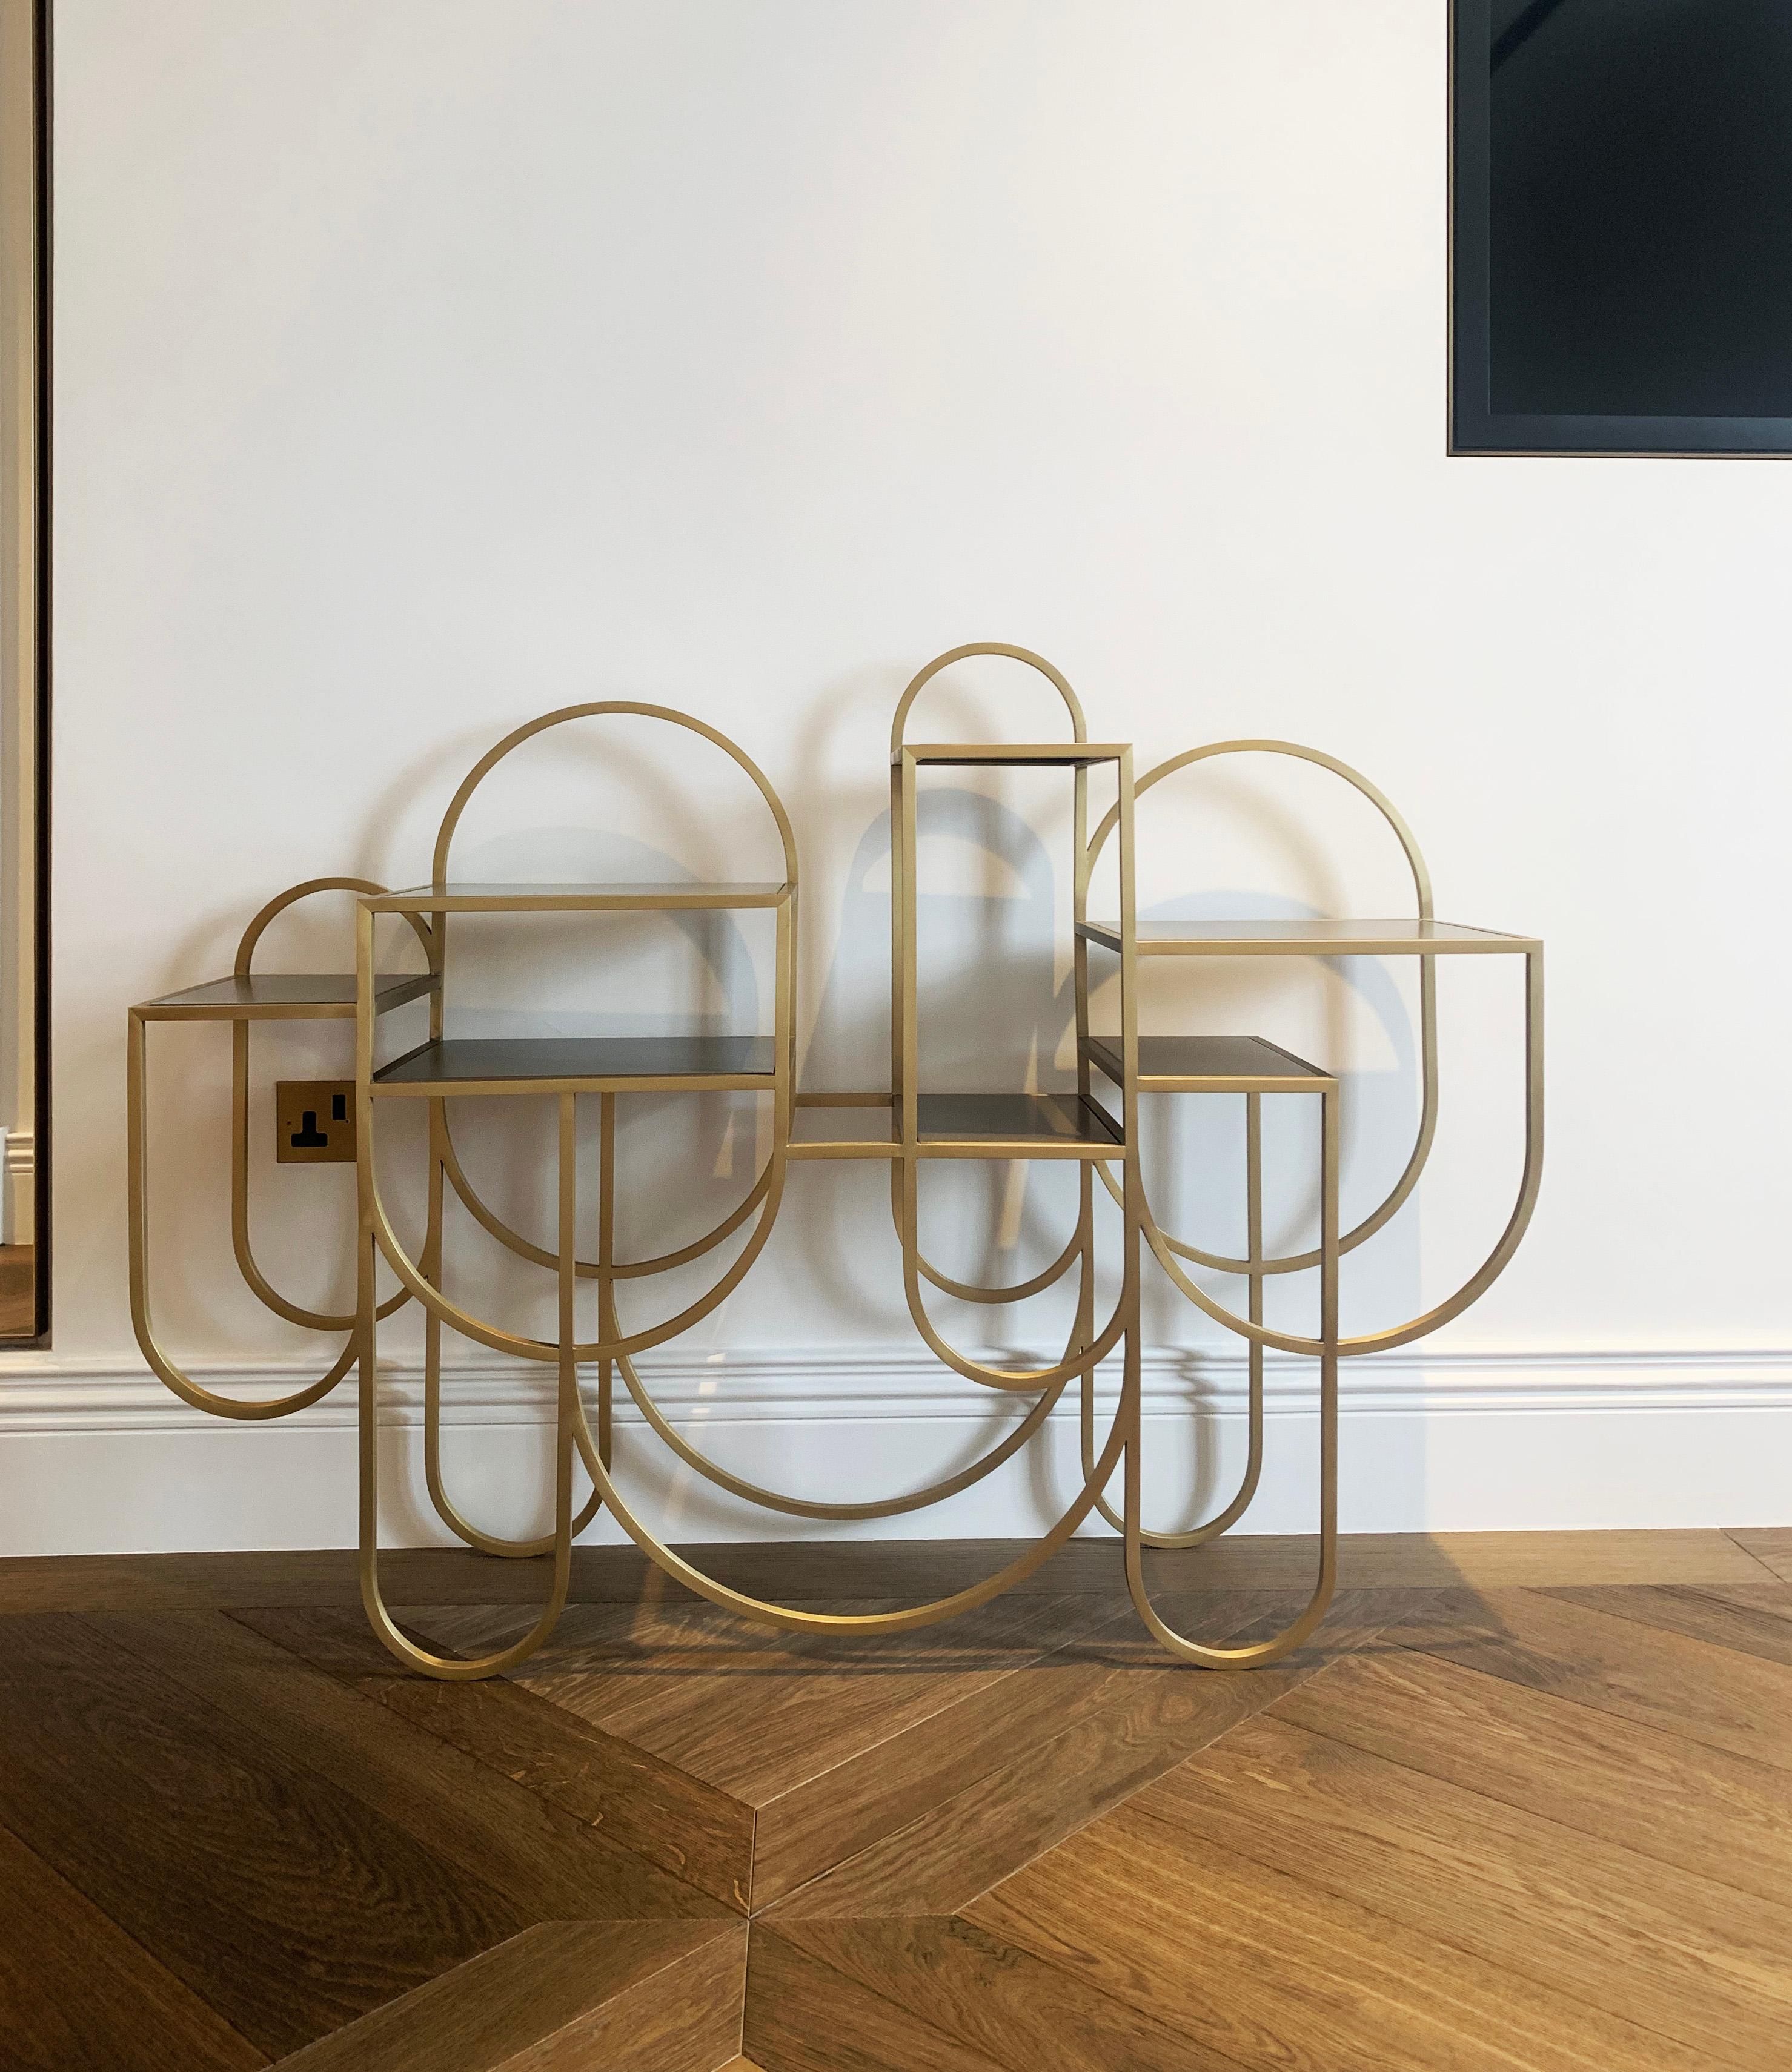 Table console contemporaine - Finition métal doré - Style Bauhaus - LARA Bohinc 2